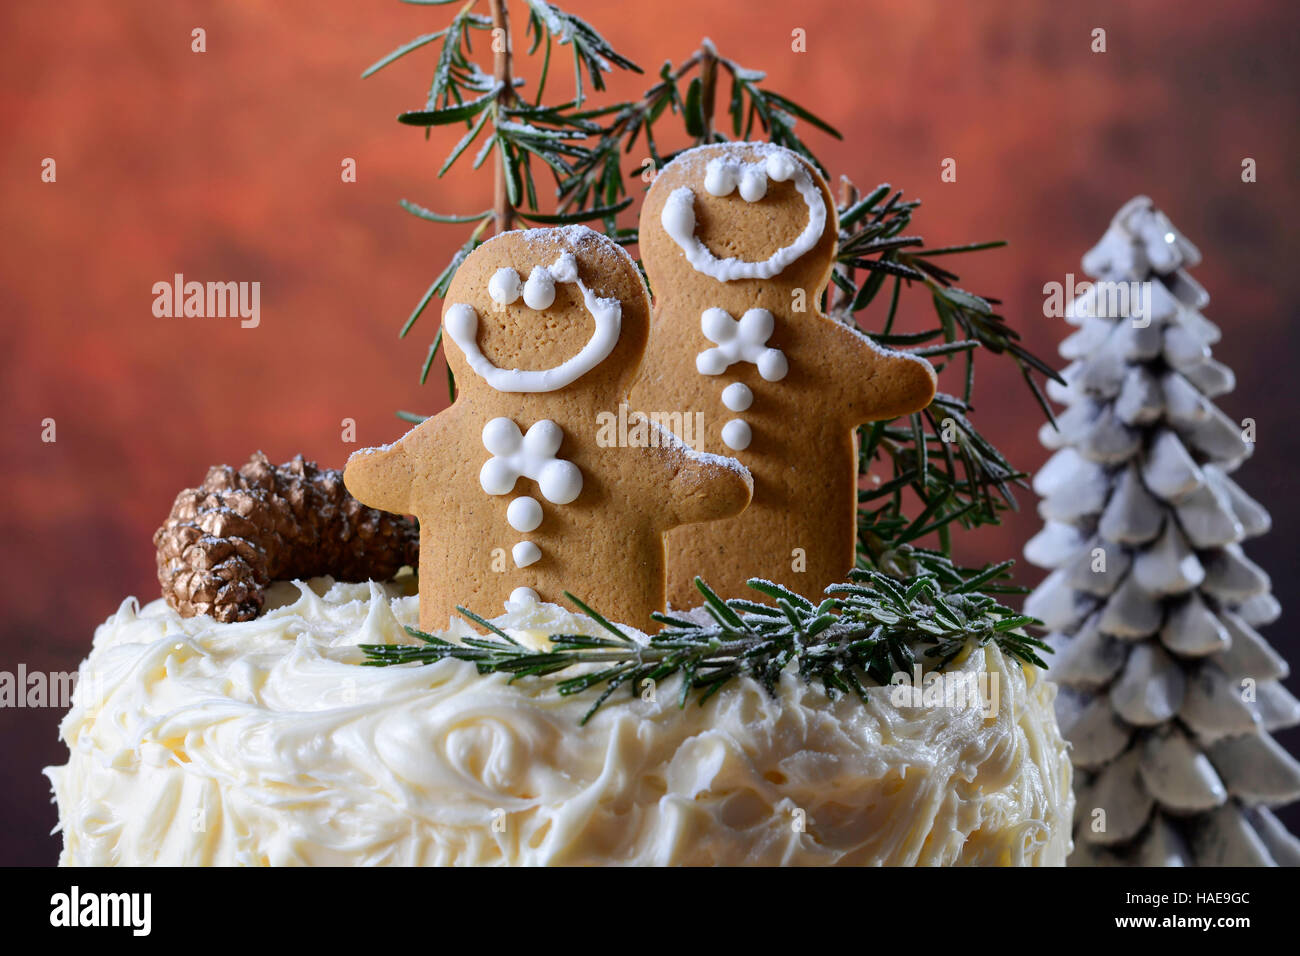 Festa di Natale vacanze impediva di procedere centrotavola bianco torta al cioccolato con pan di zenzero uomini cooklies e il rosmarino e decorazioni di alberi in un moderno rusti Foto Stock